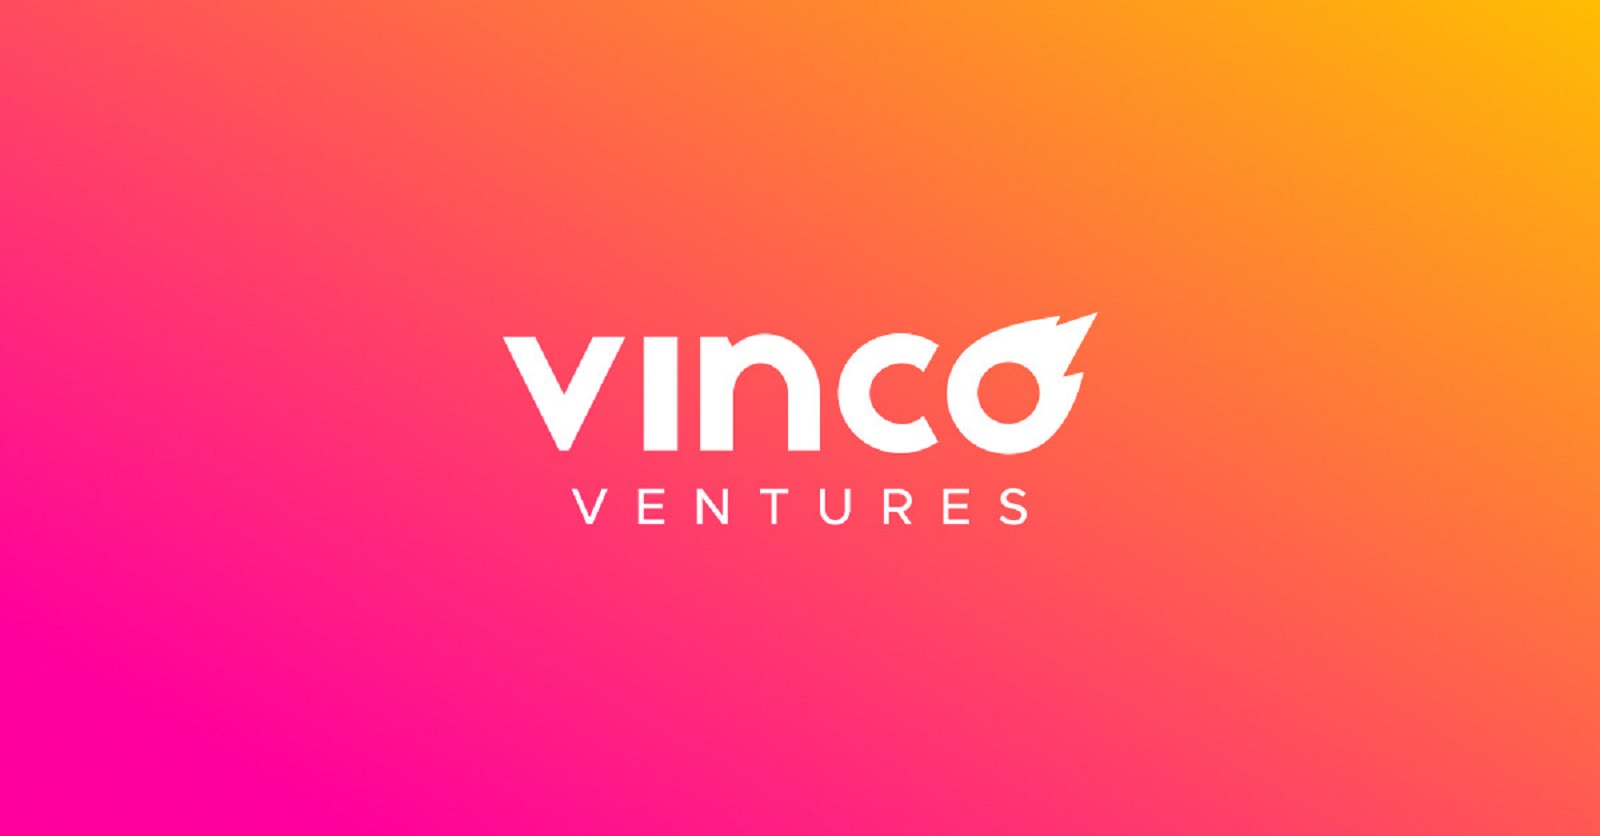 vinco ventures (BBIG) logo on an orange/red background